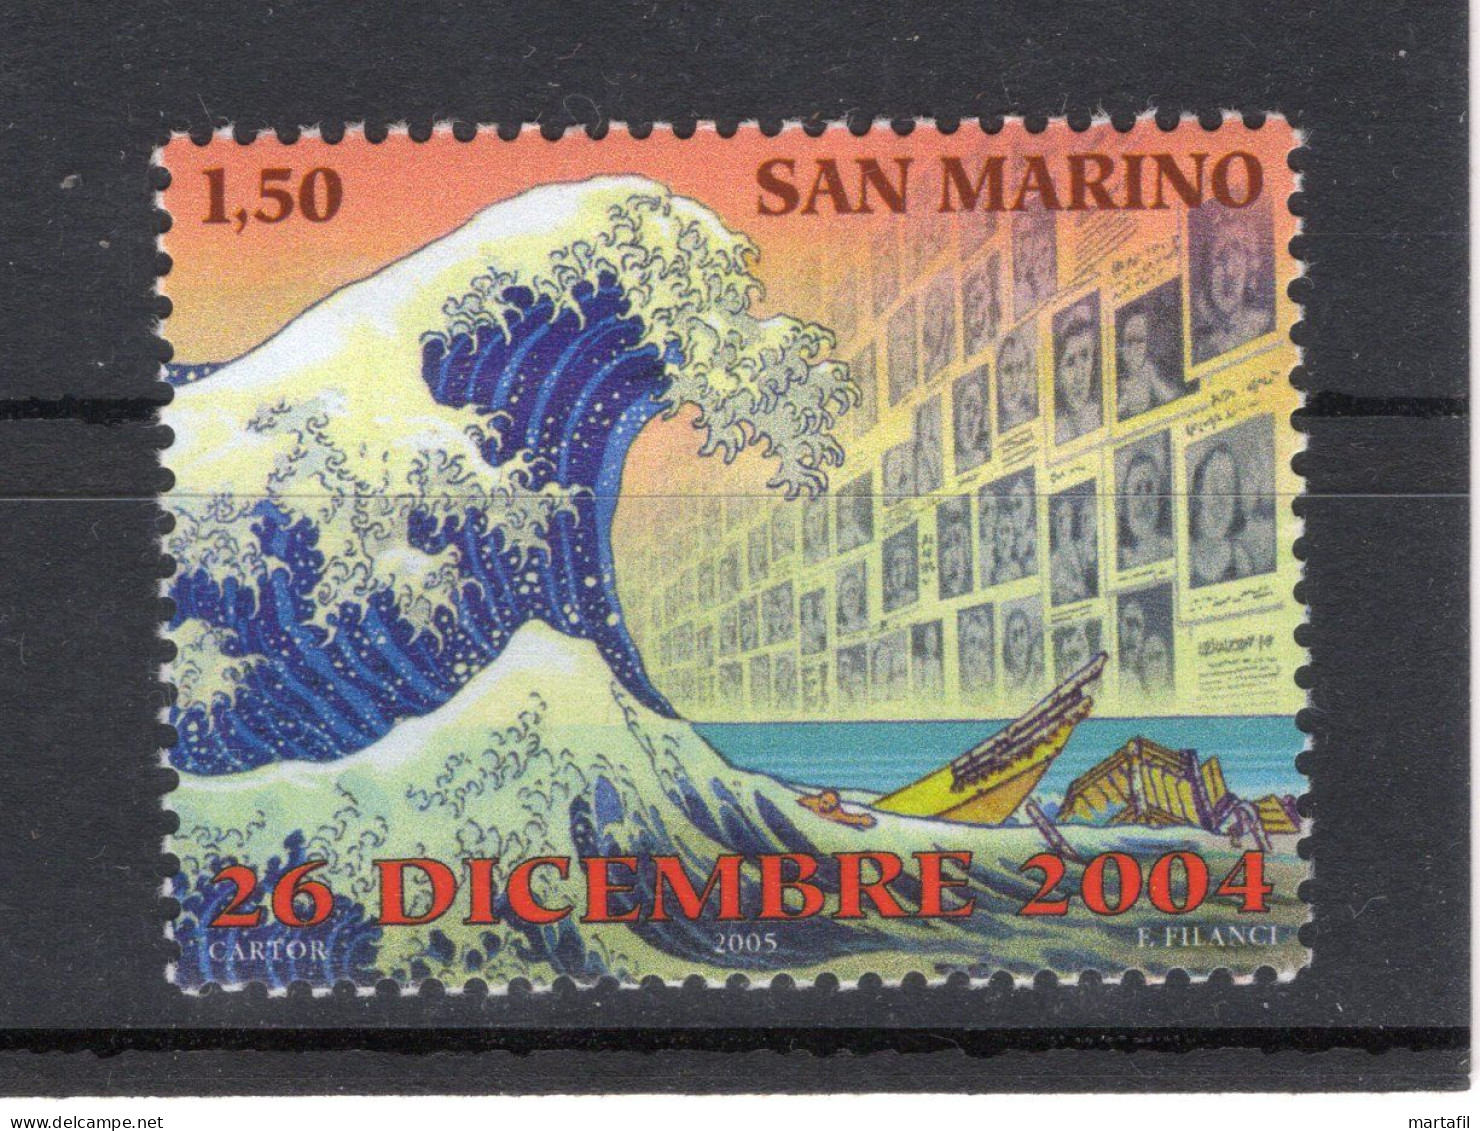 2005 SAN MARINO SET MNH ** 2034 Tsunami, Arte, Hokusai Katsushika - Ungebraucht